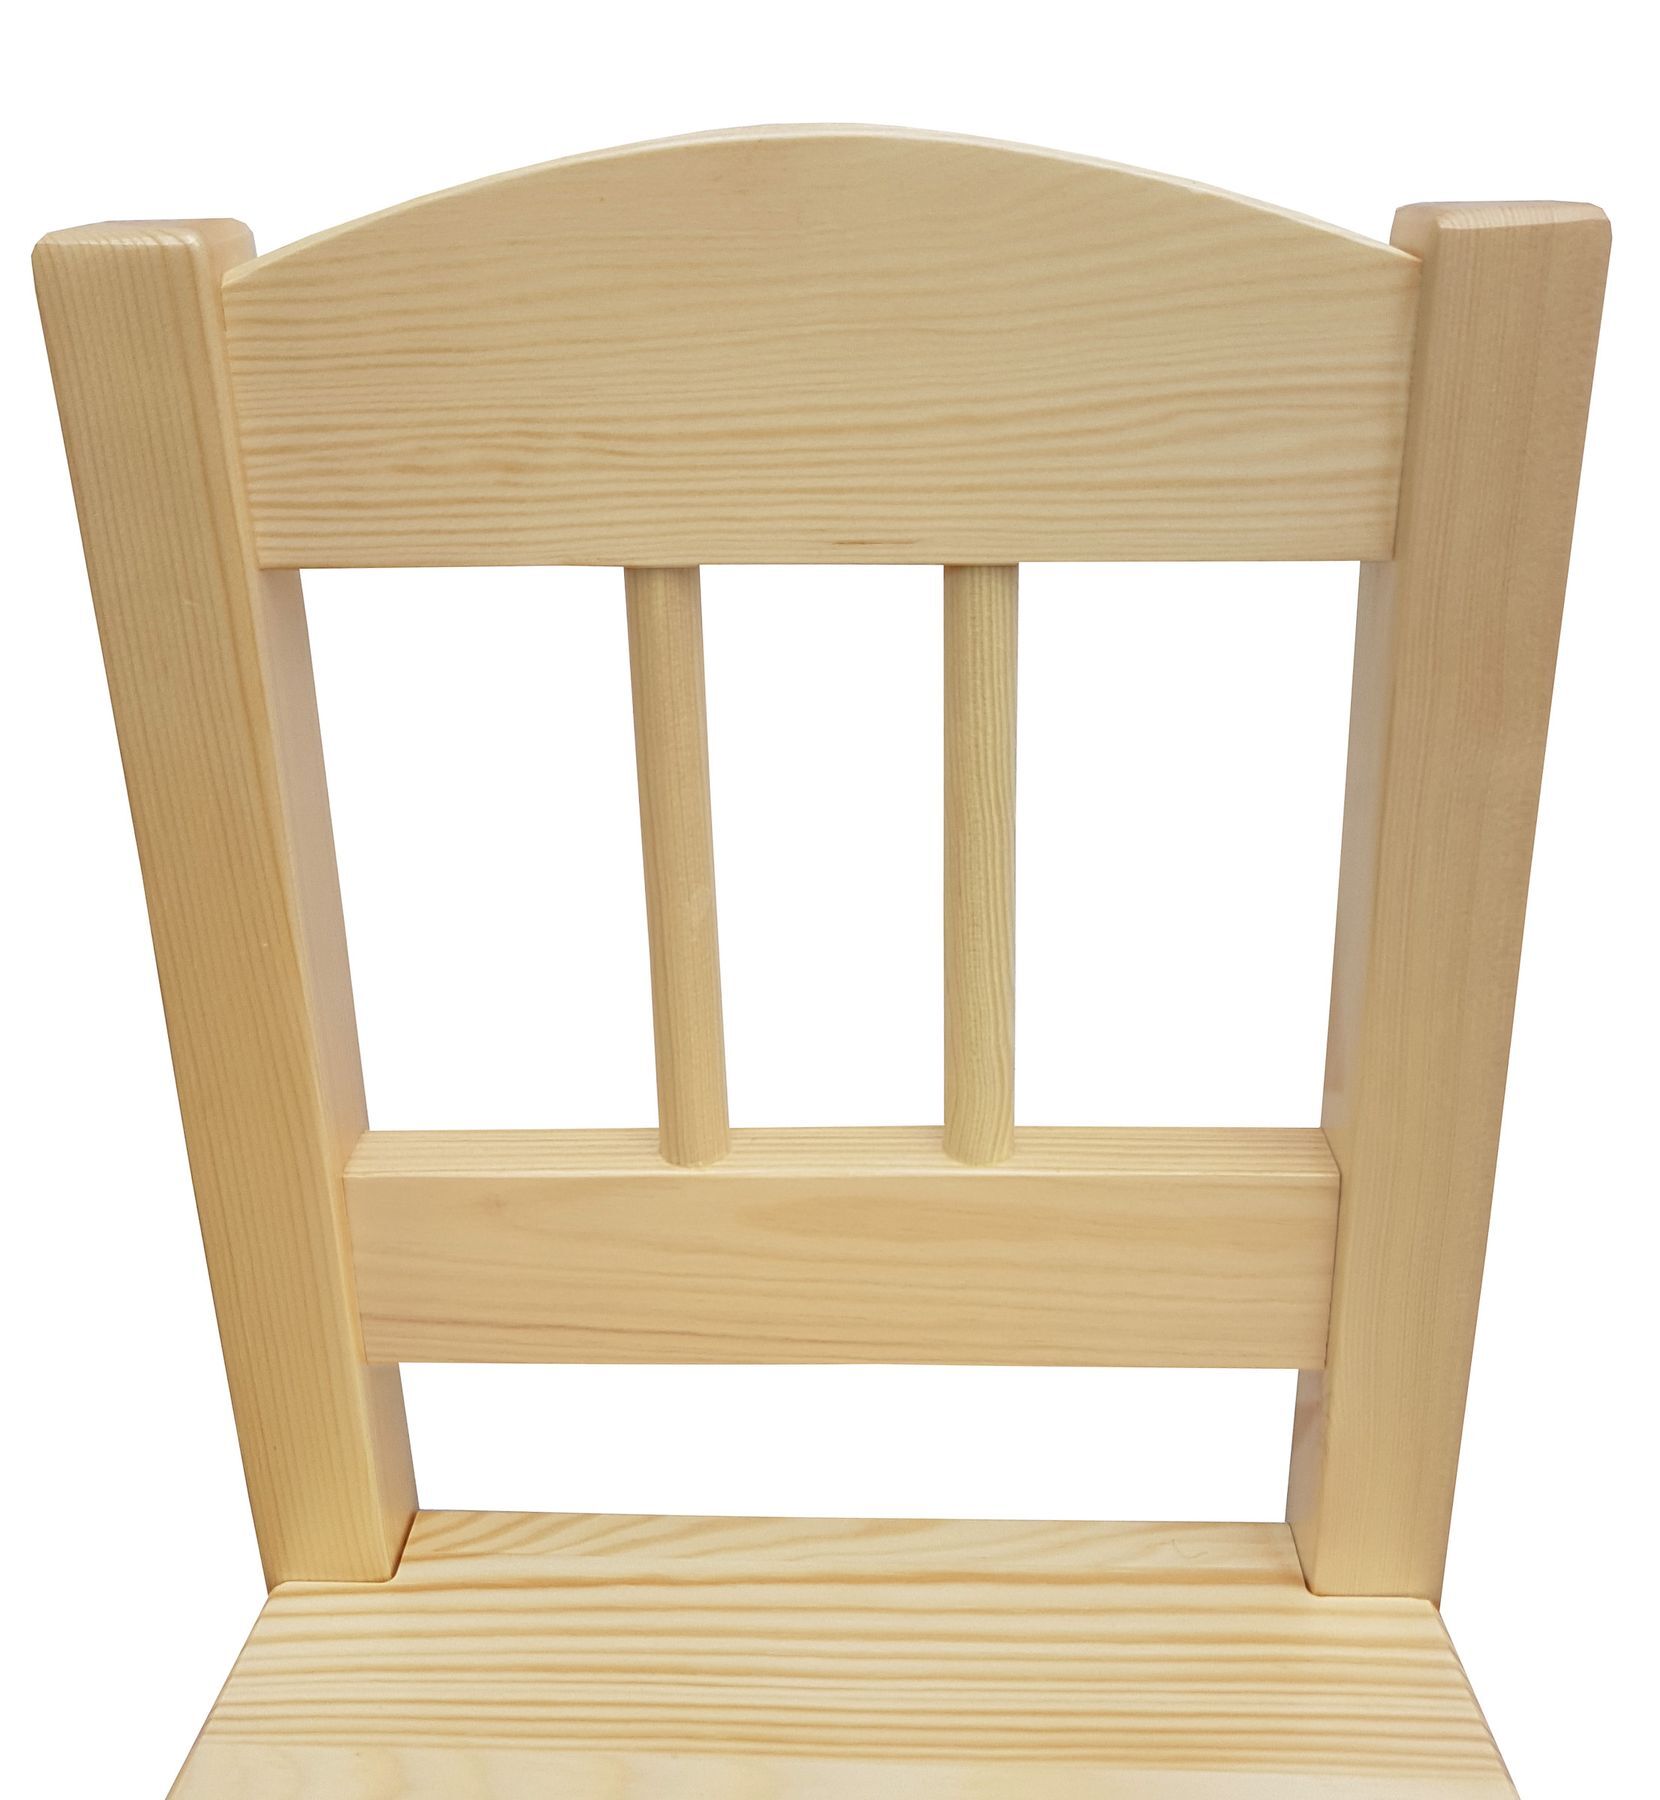 Kindersitzgruppe in weiß oder Holzfarbe Massiv mit Tisch und 2 Stühlen V-90.70-01